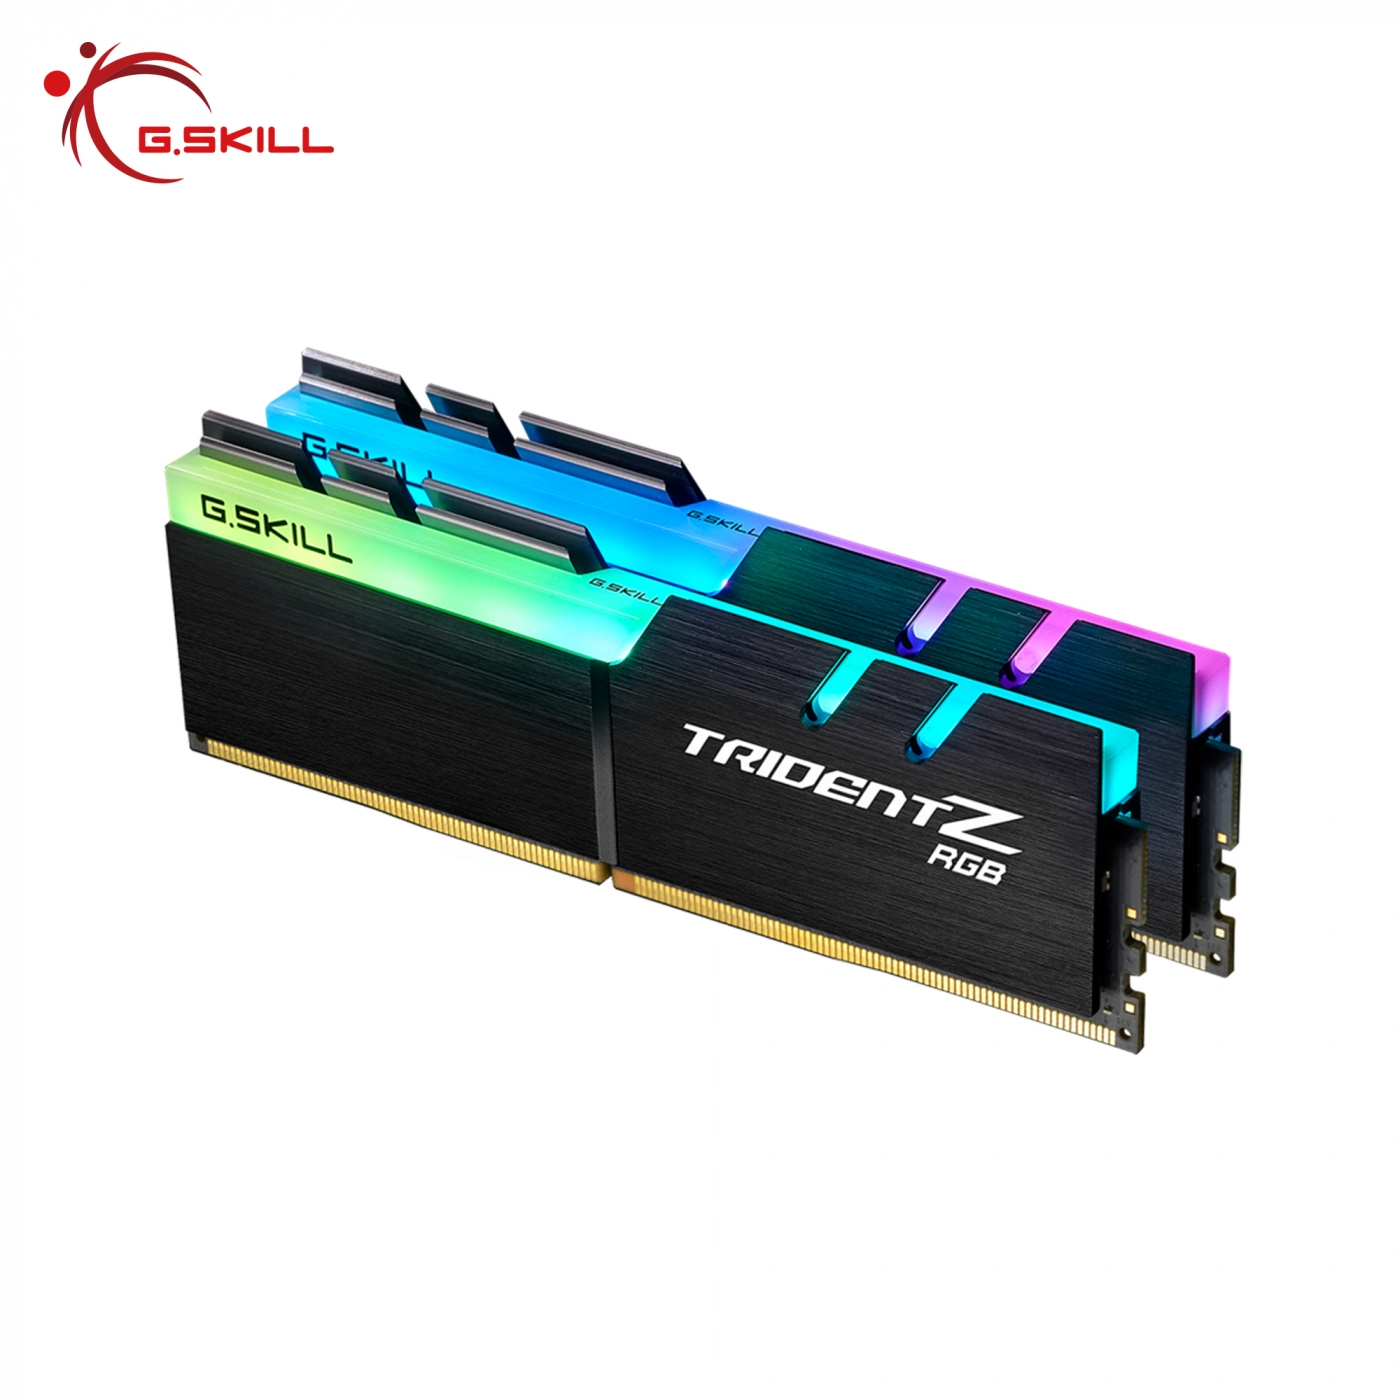 Купить Модуль памяти G.Skill Trident Z RGB (For AMD) DDR4-3200 CL16-18-18-38 1.35V 32GB (2x16GB) - фото 2